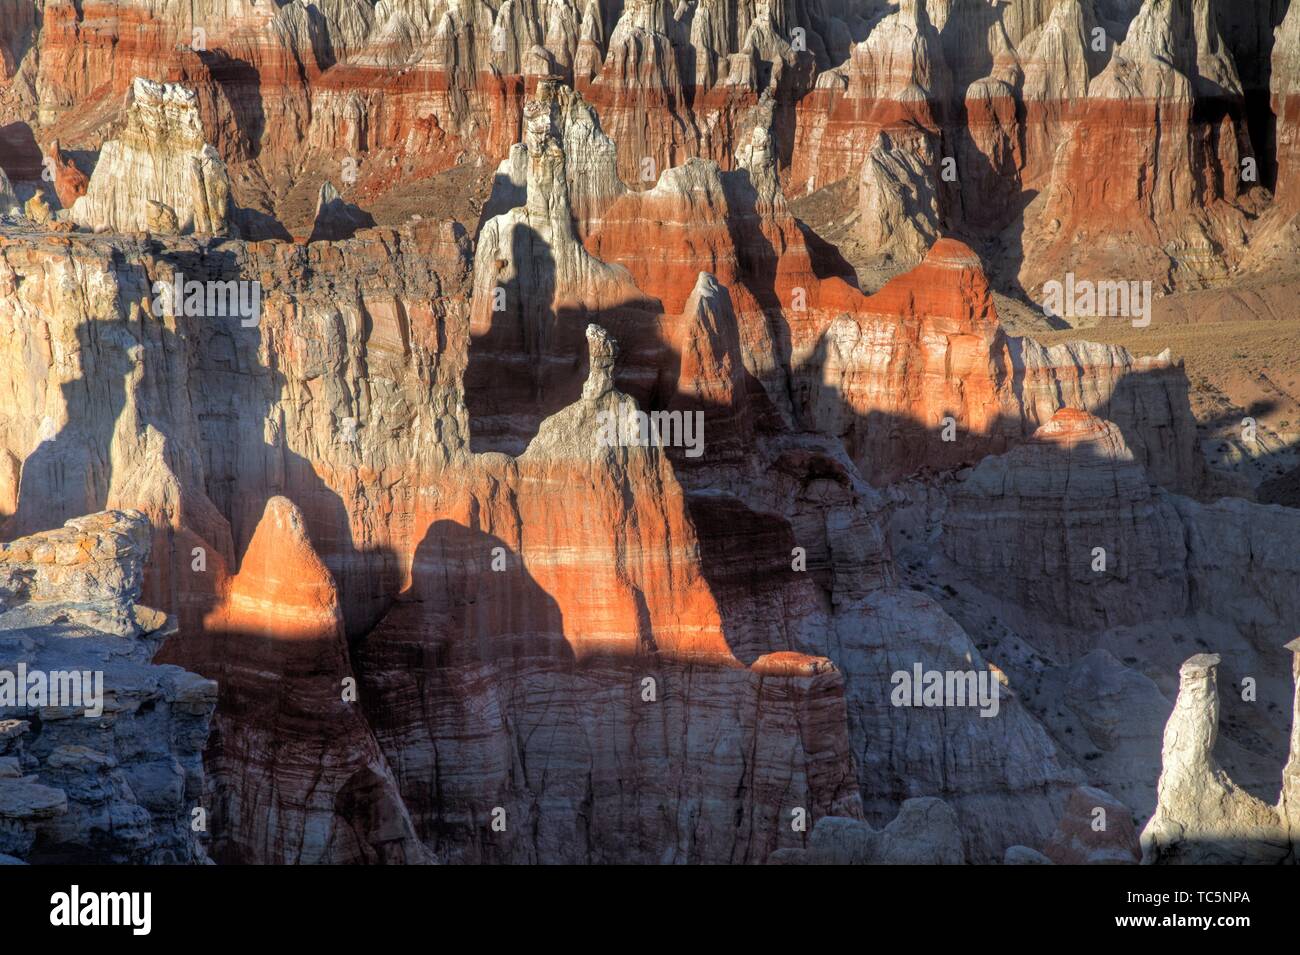 Des formations rocheuses érodées sanstone composent le paysage à charbon Canyon dans l'Arizona du Nord. Banque D'Images